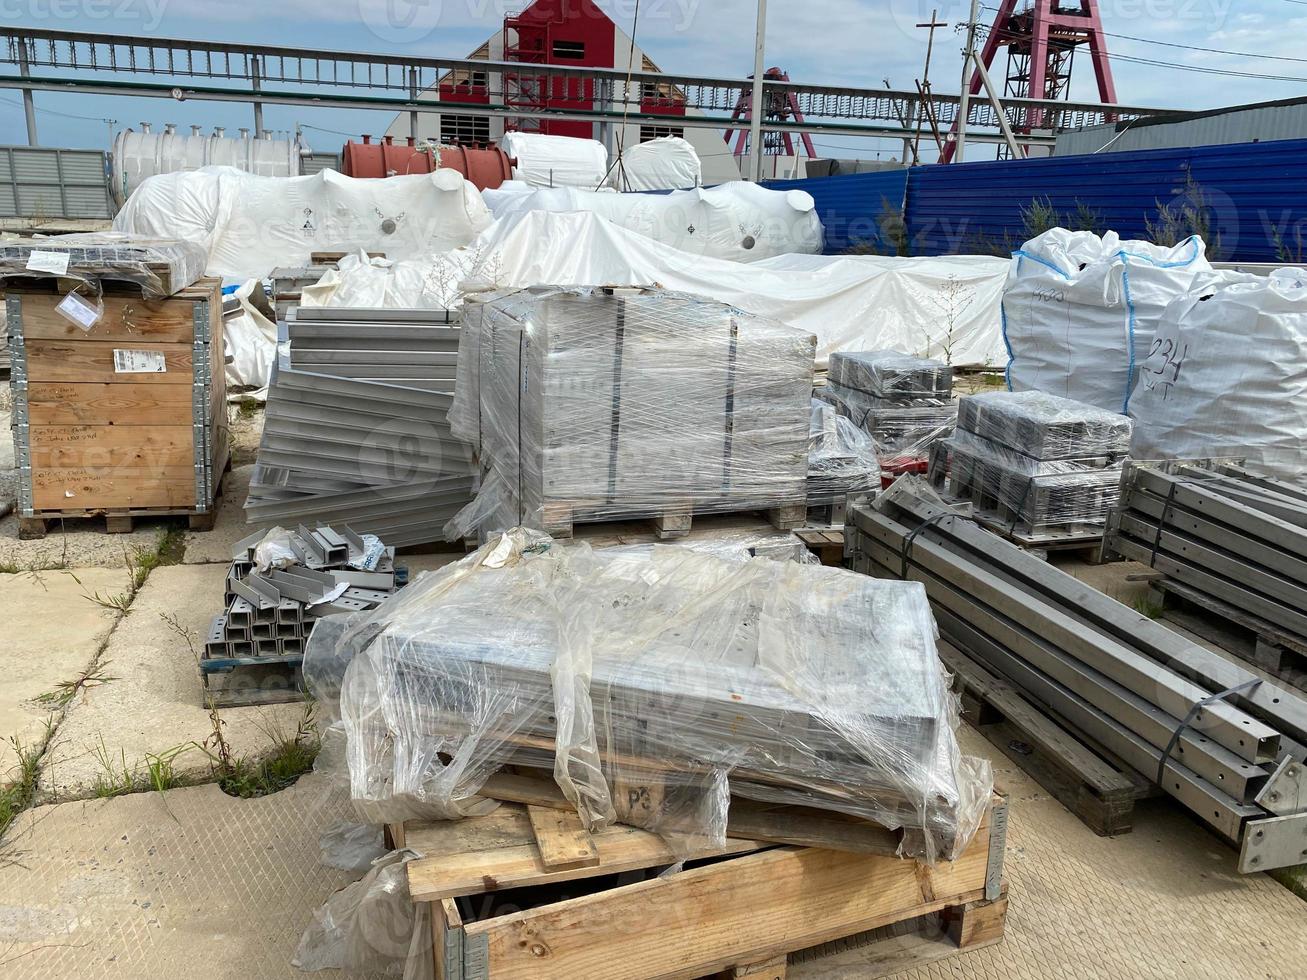 estructuras metálicas para la construcción y tuberías sobre paletas en un almacén al aire libre para el almacenamiento de materiales y equipos industriales foto